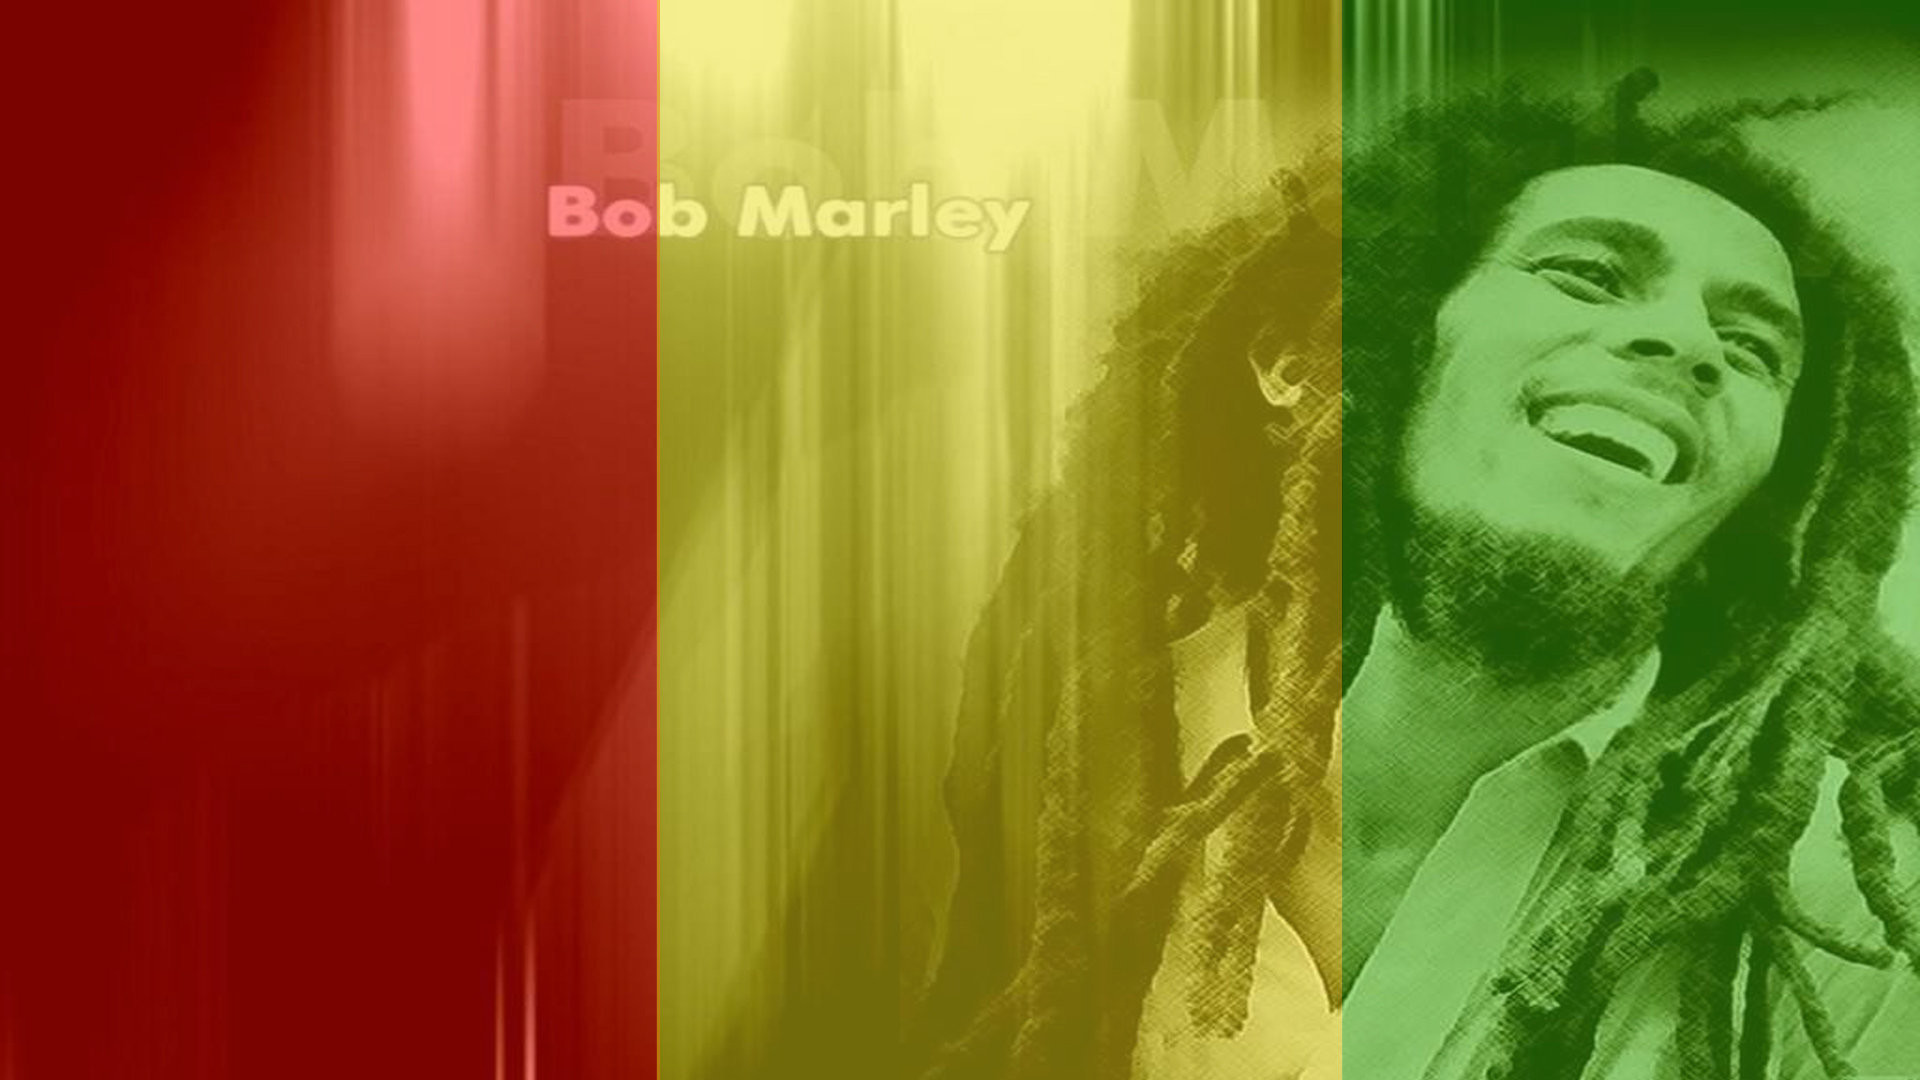 1920x1080 Bob Marley, High, Resolution, Wallpaper, For, Desktop, Background,  Download, Bob Marley, Images, Famous Singer, Hd Music Images, Popular,  Reggae, ...